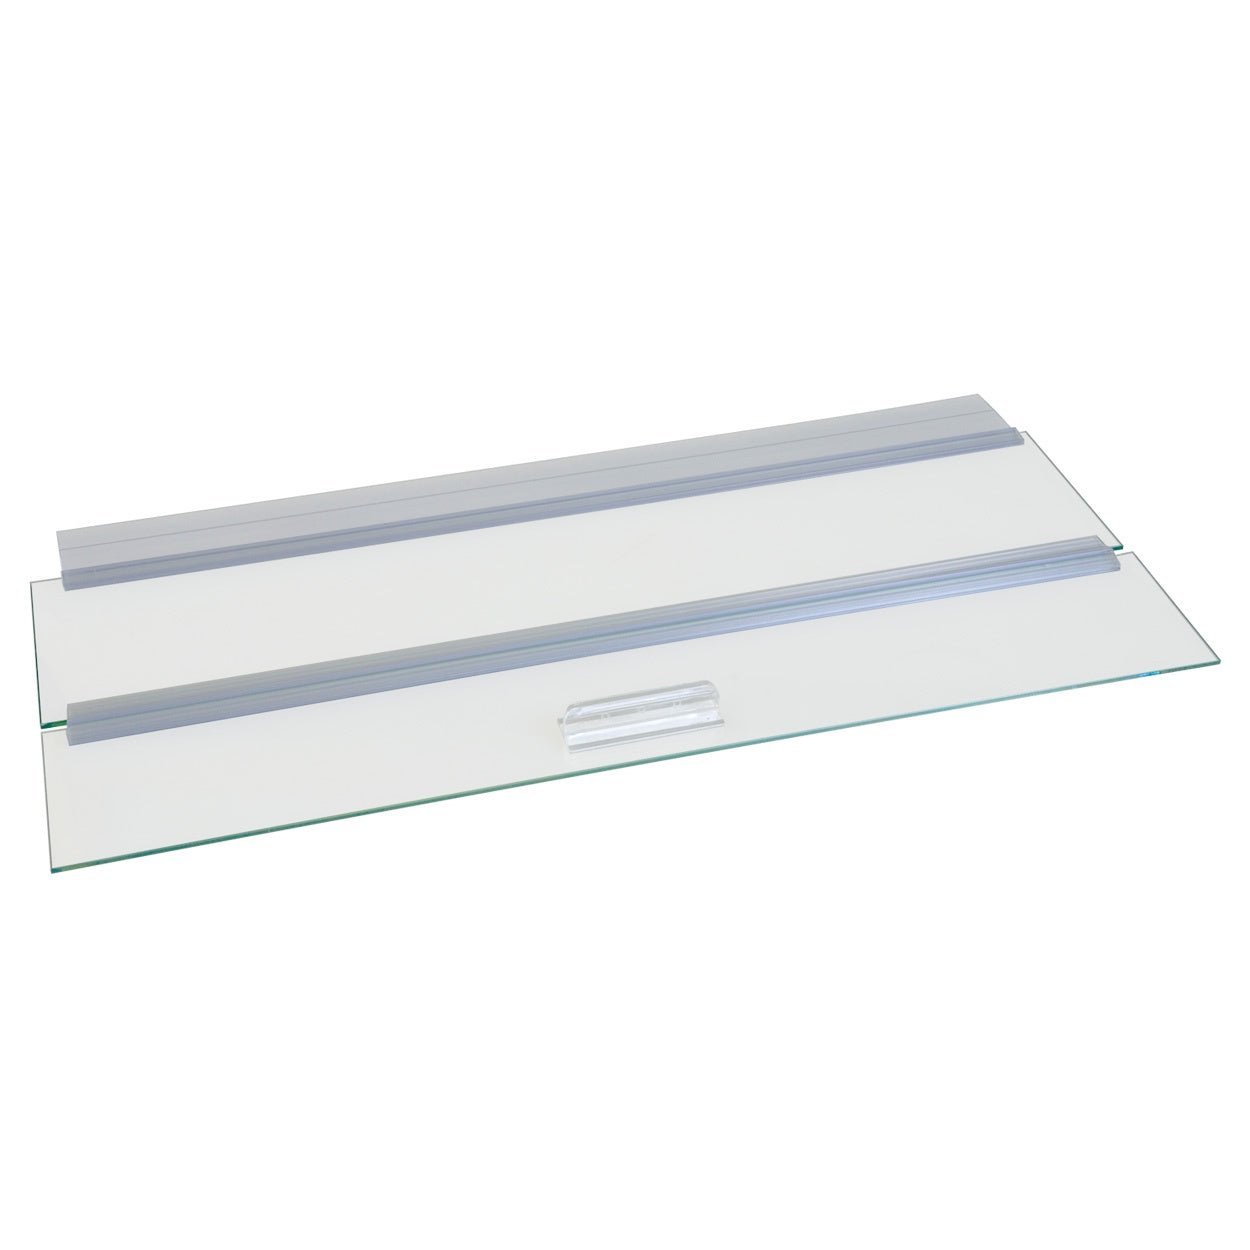 Seapora Glass Canopy - 20 Gallon (24"x12")